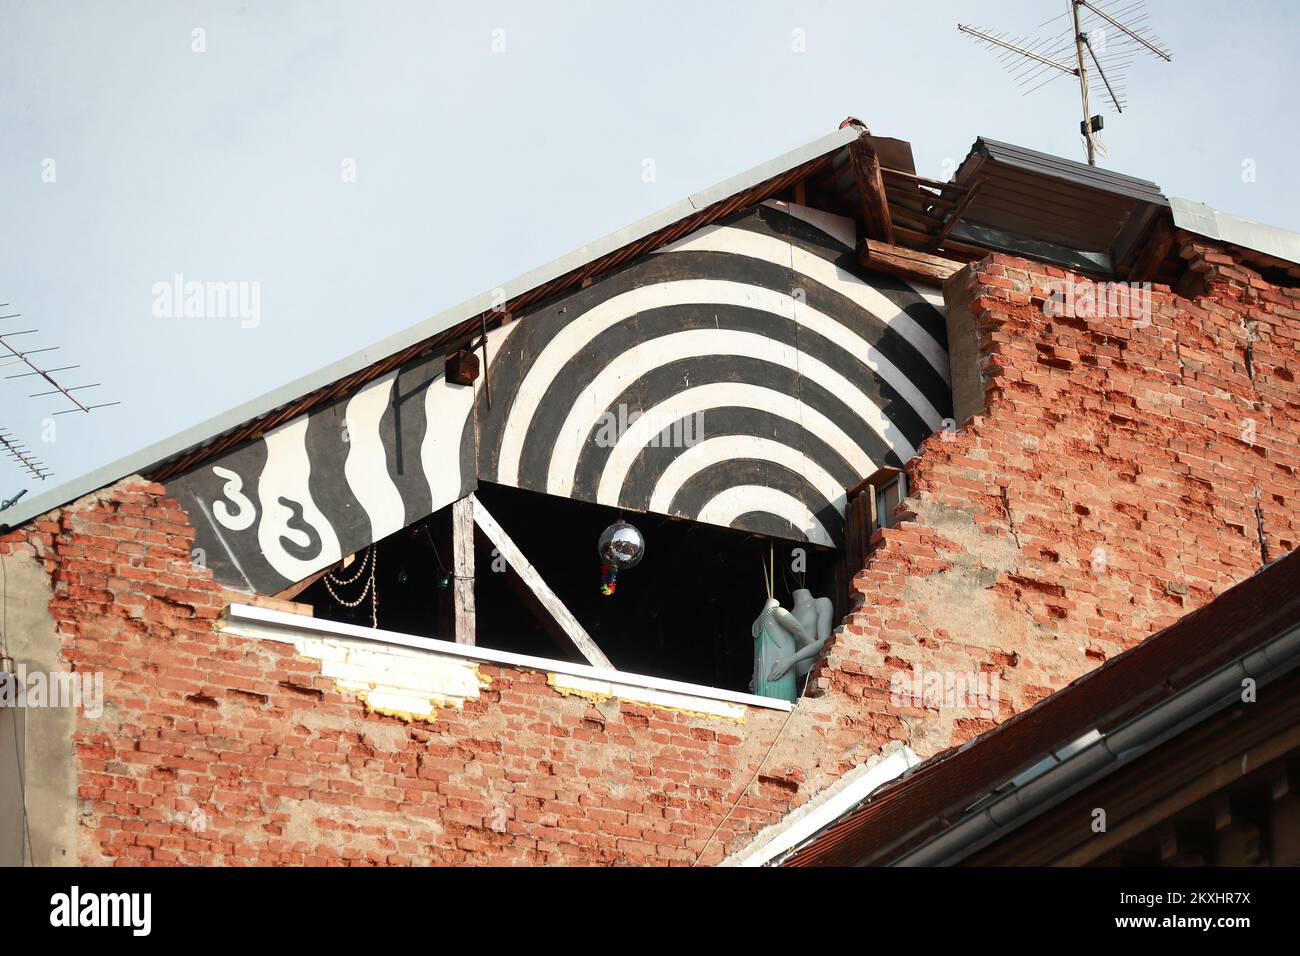 Das Foto wurde am 22. September 2020 aufgenommen und zeigt die Folgen des Erdbebens, das Zagreb, Kroatien, an diesem Tag vor genau einem halben Jahr heimsuchte. Ein Erdbeben in Zagreb mit einer Stärke von 5,5 auf der Richterskala ereignete sich am Sonntag, den 22. März 2020 um 6:24 UHR IN Zagreb. Das Euromediterrane Seismologische Zentrum berichtete, dass sich das Epizentrum 7 Kilometer nördlich des Zagreber Zentrums in einer Tiefe von 10 km befand Foto: Sanjin Strukic/PIXSELL Stockfoto